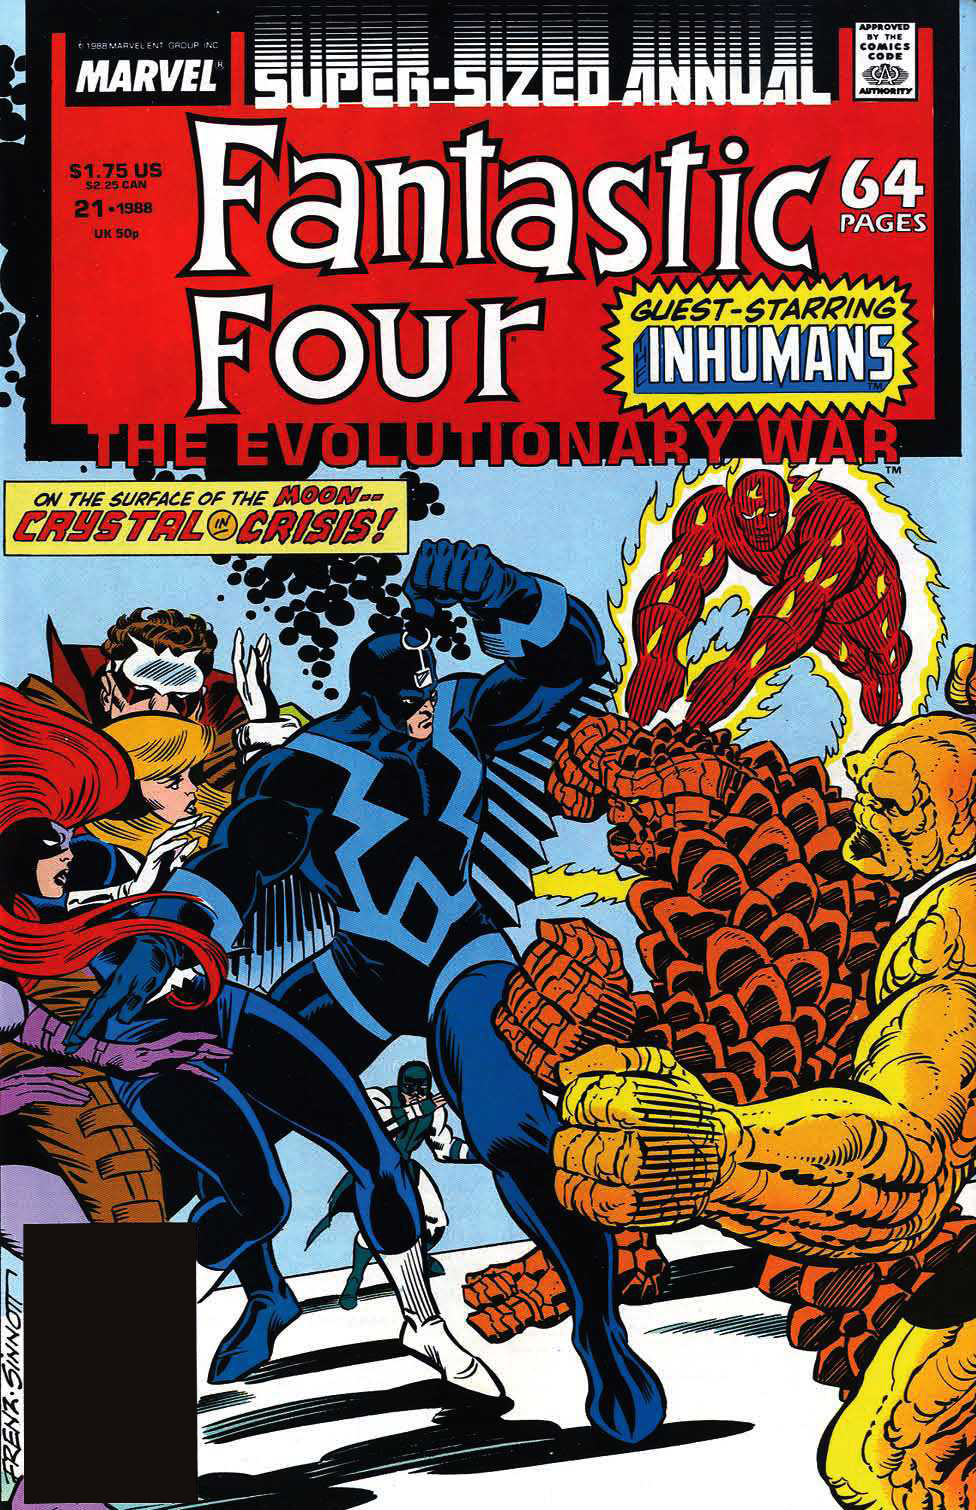 FF1 Marvel Super heroes BLACK BOLT figure US Seller Fantastic Four Inhumans 